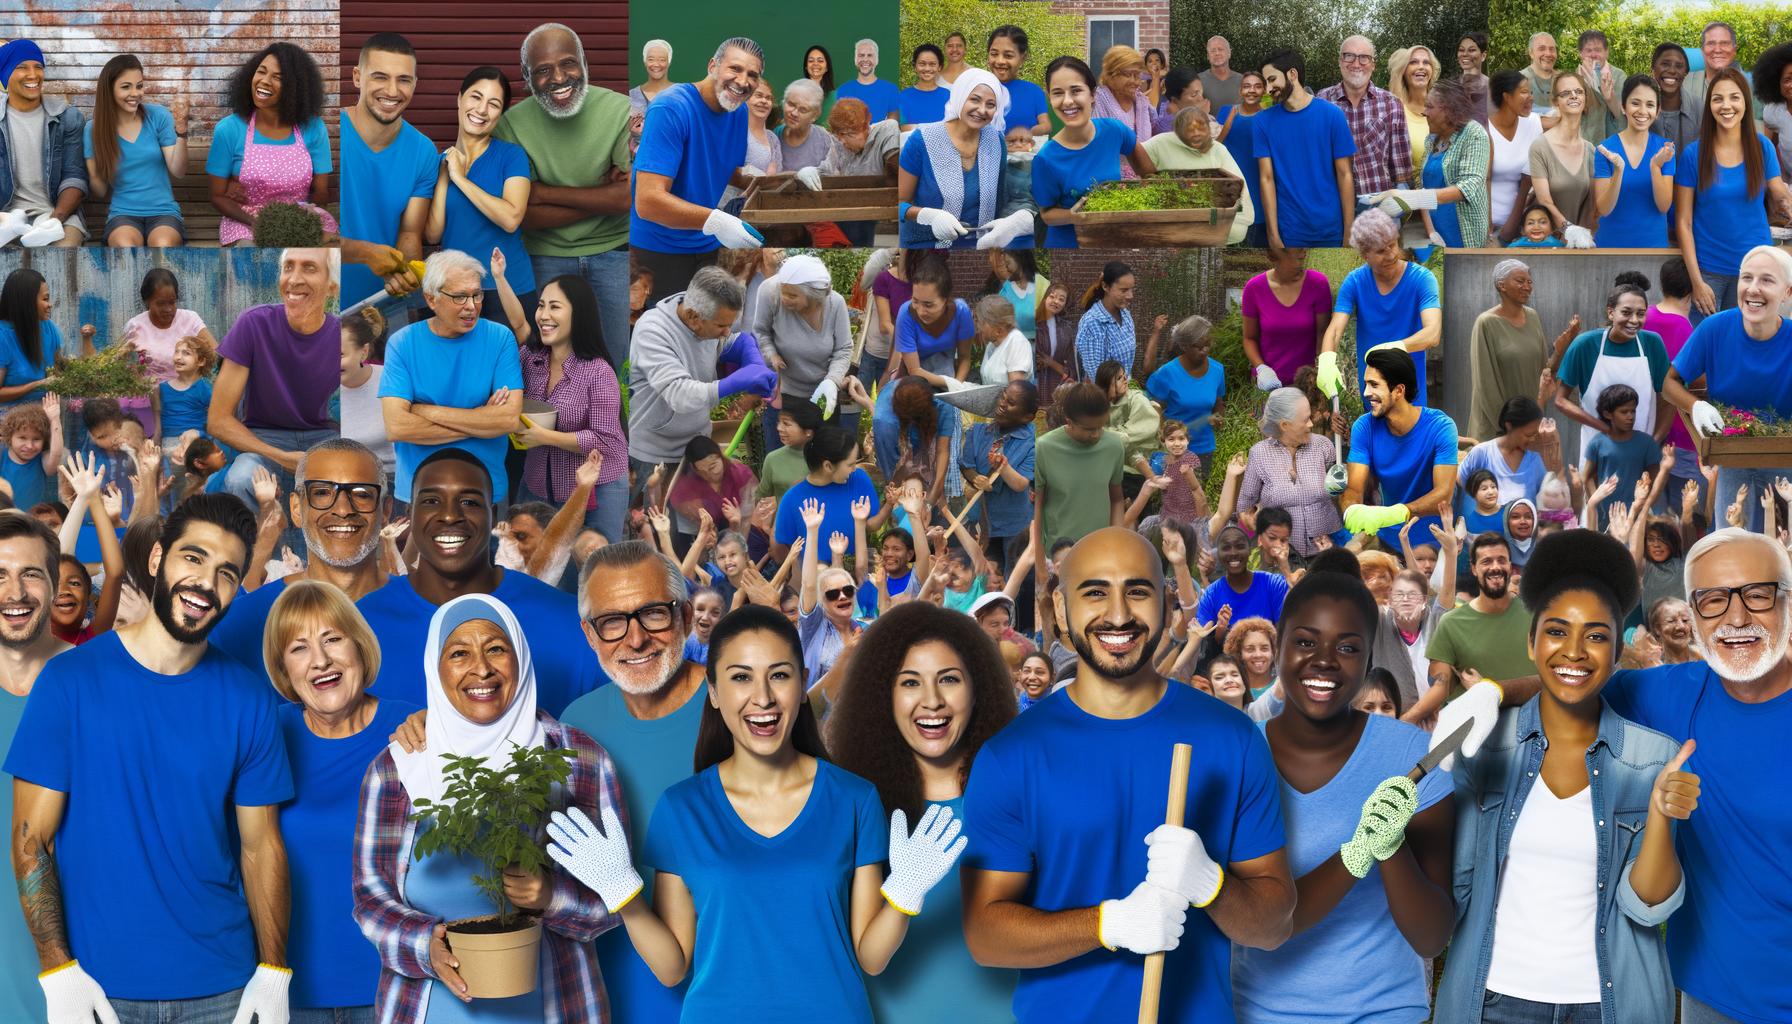 people in blue shirts volunteering in community